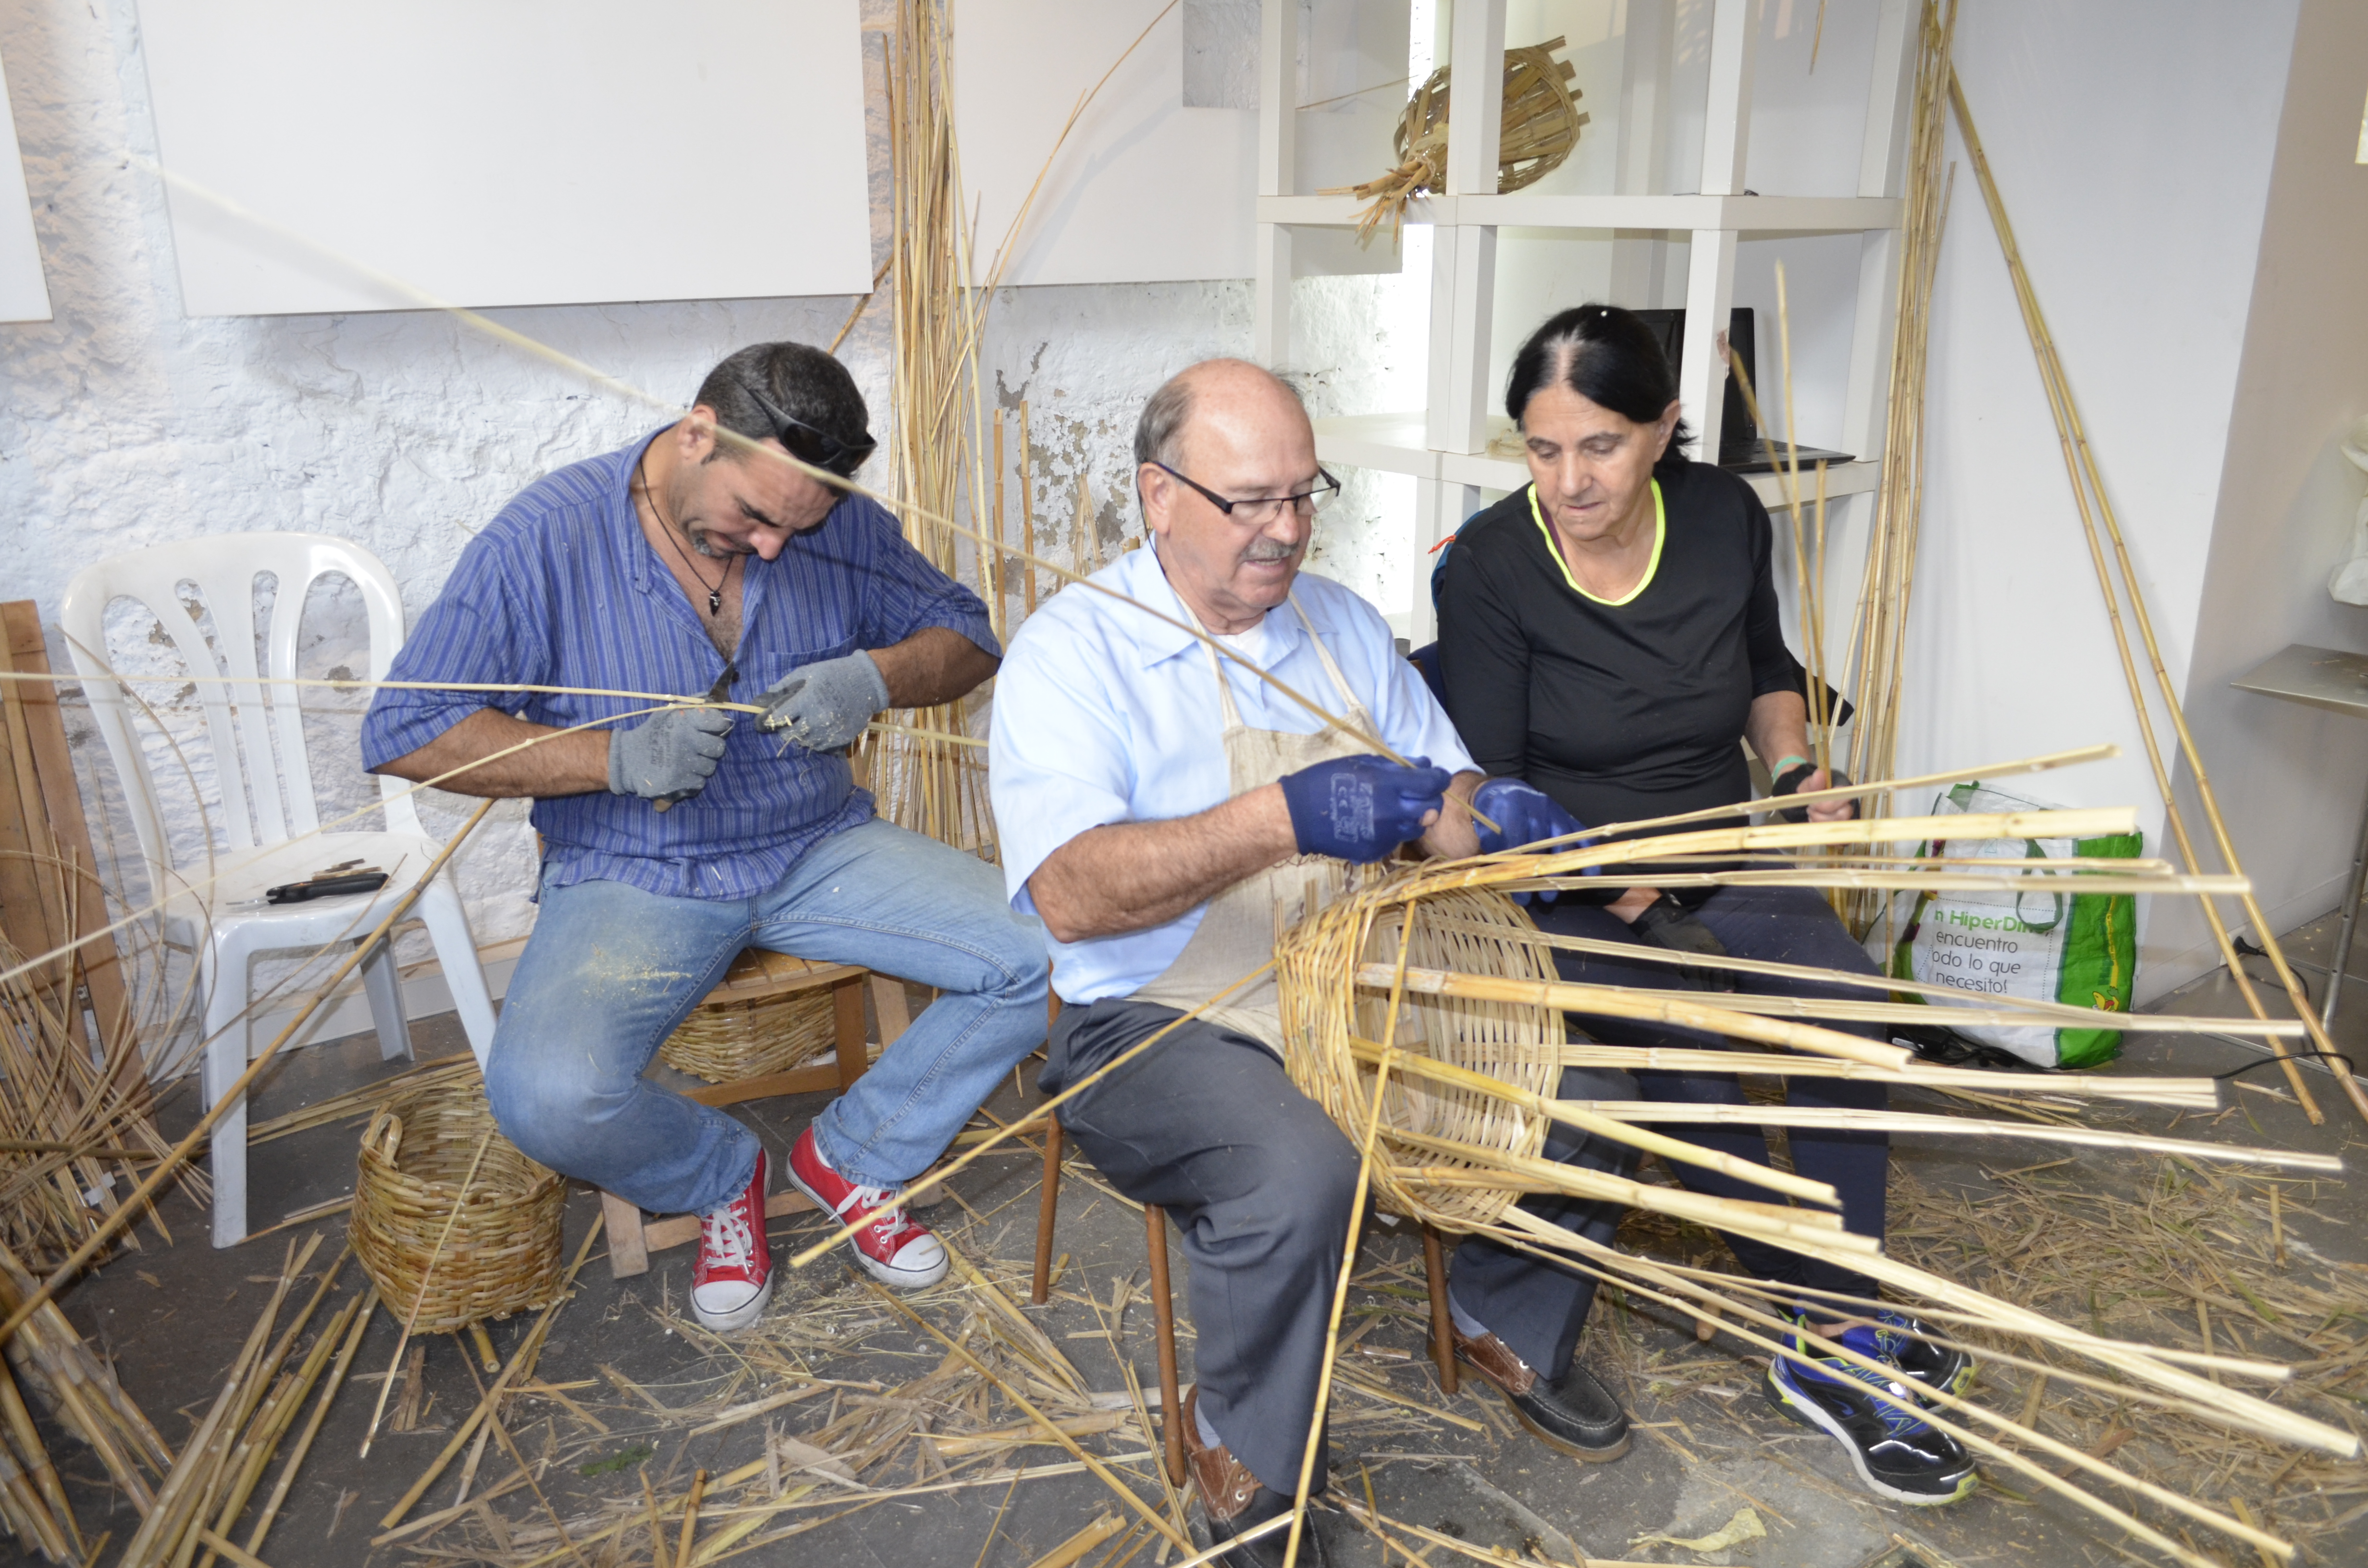 El Cabildo apuesta este año por transmitir los secretos de la cestería, encuadernación y fieltro artesanal en su programa de verano